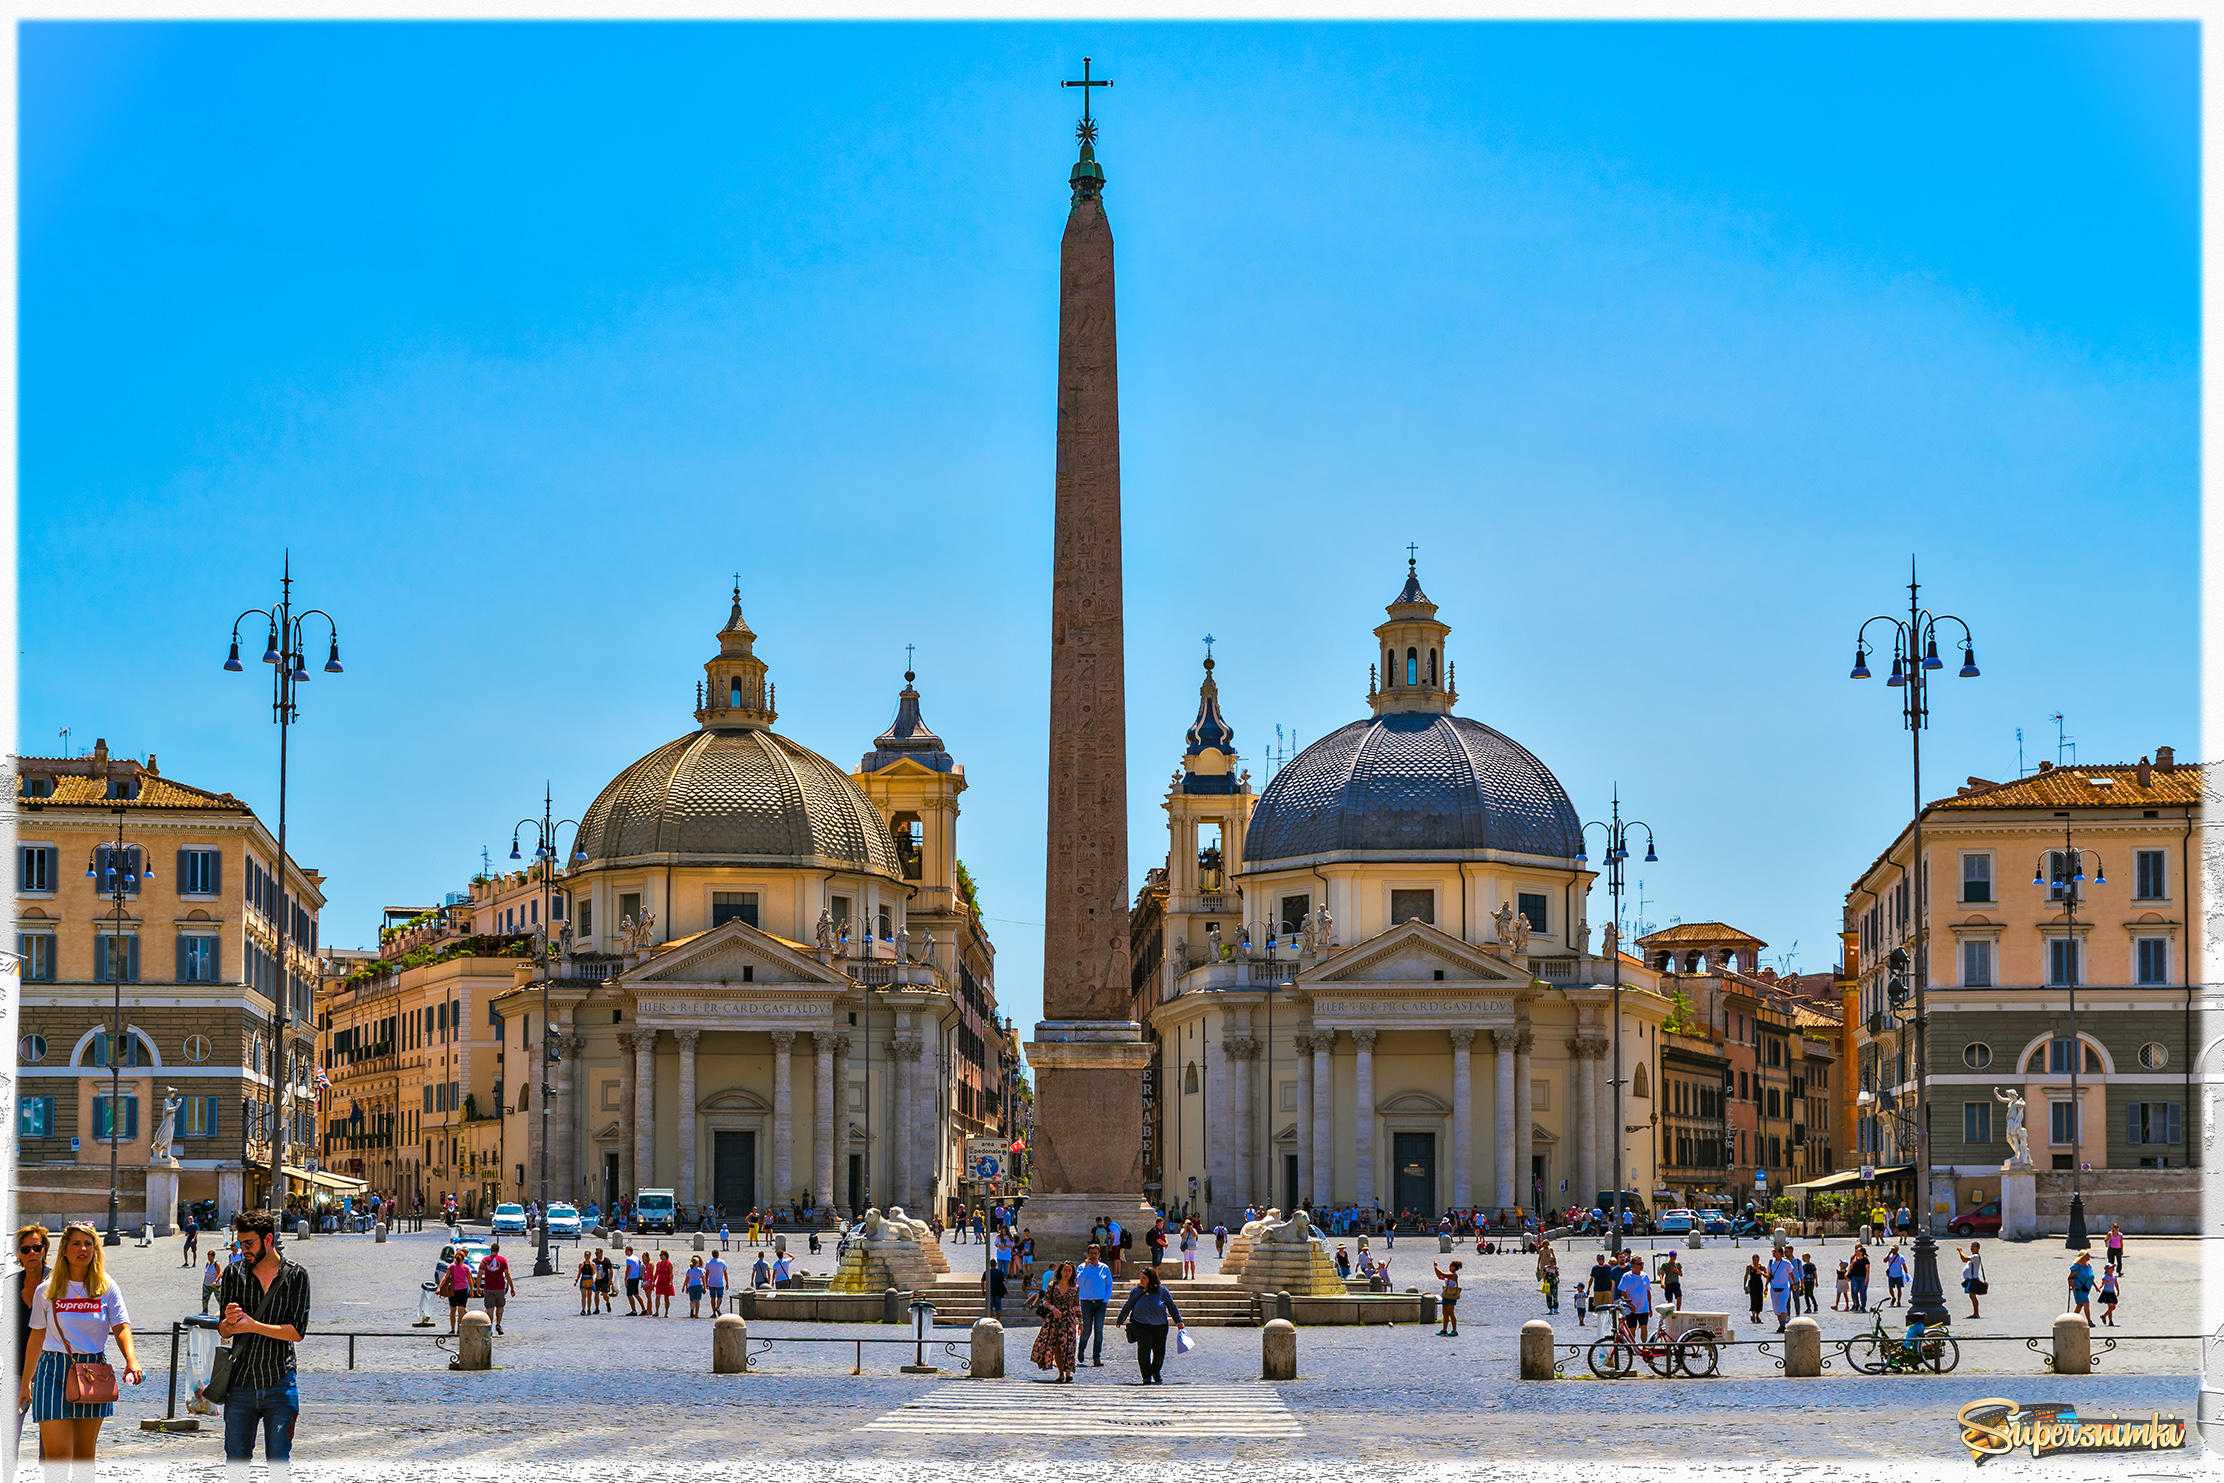 5 дней в риме: план самостоятельного отдыха | поездка в рим - все о риме и еще больше об италии